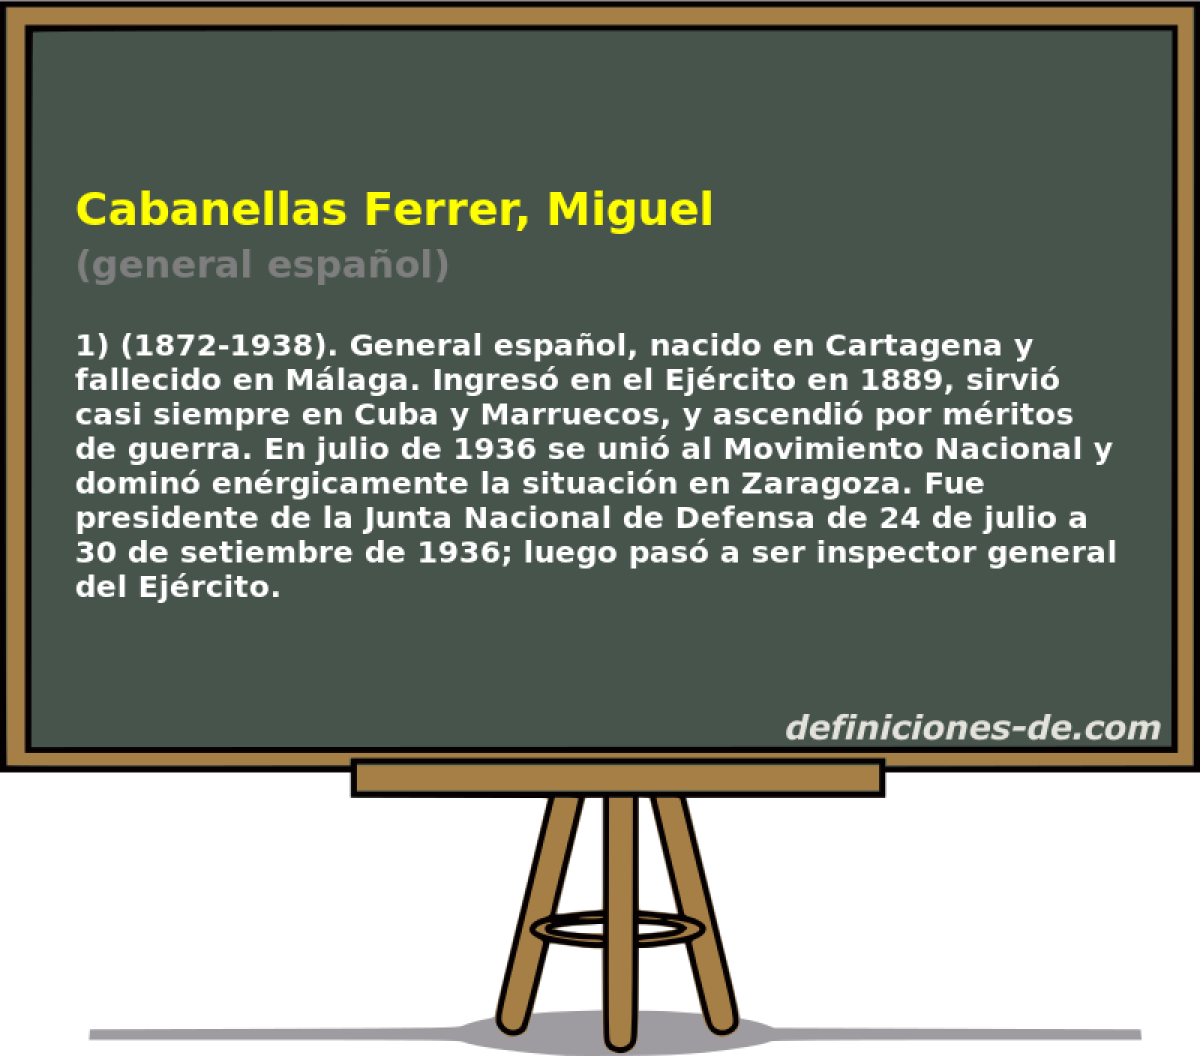 Cabanellas Ferrer, Miguel (general espaol)